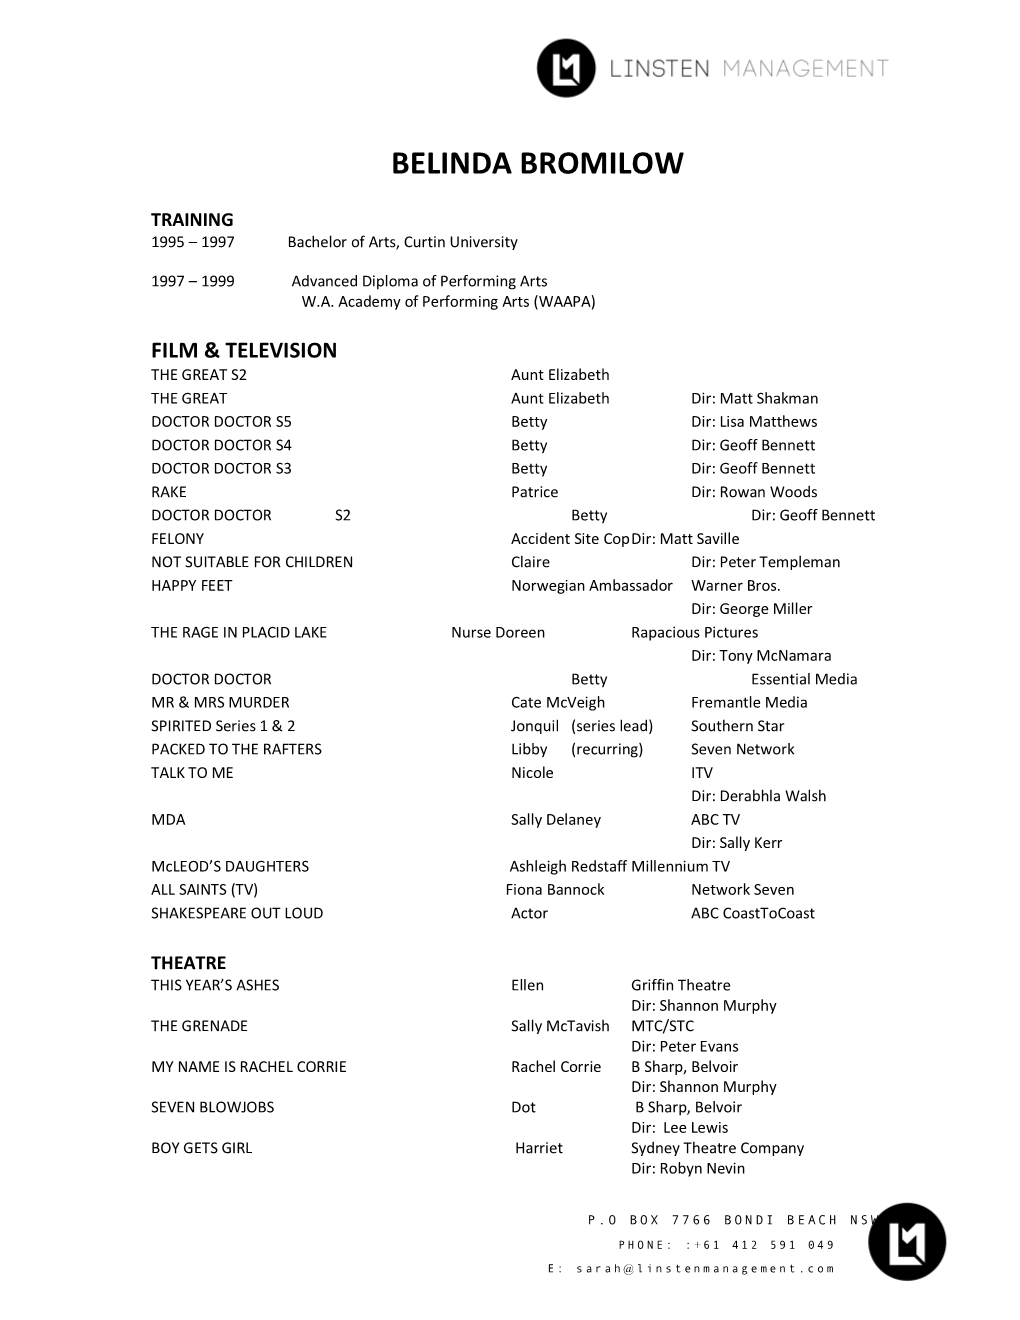 Bromilow, Belinda Biography